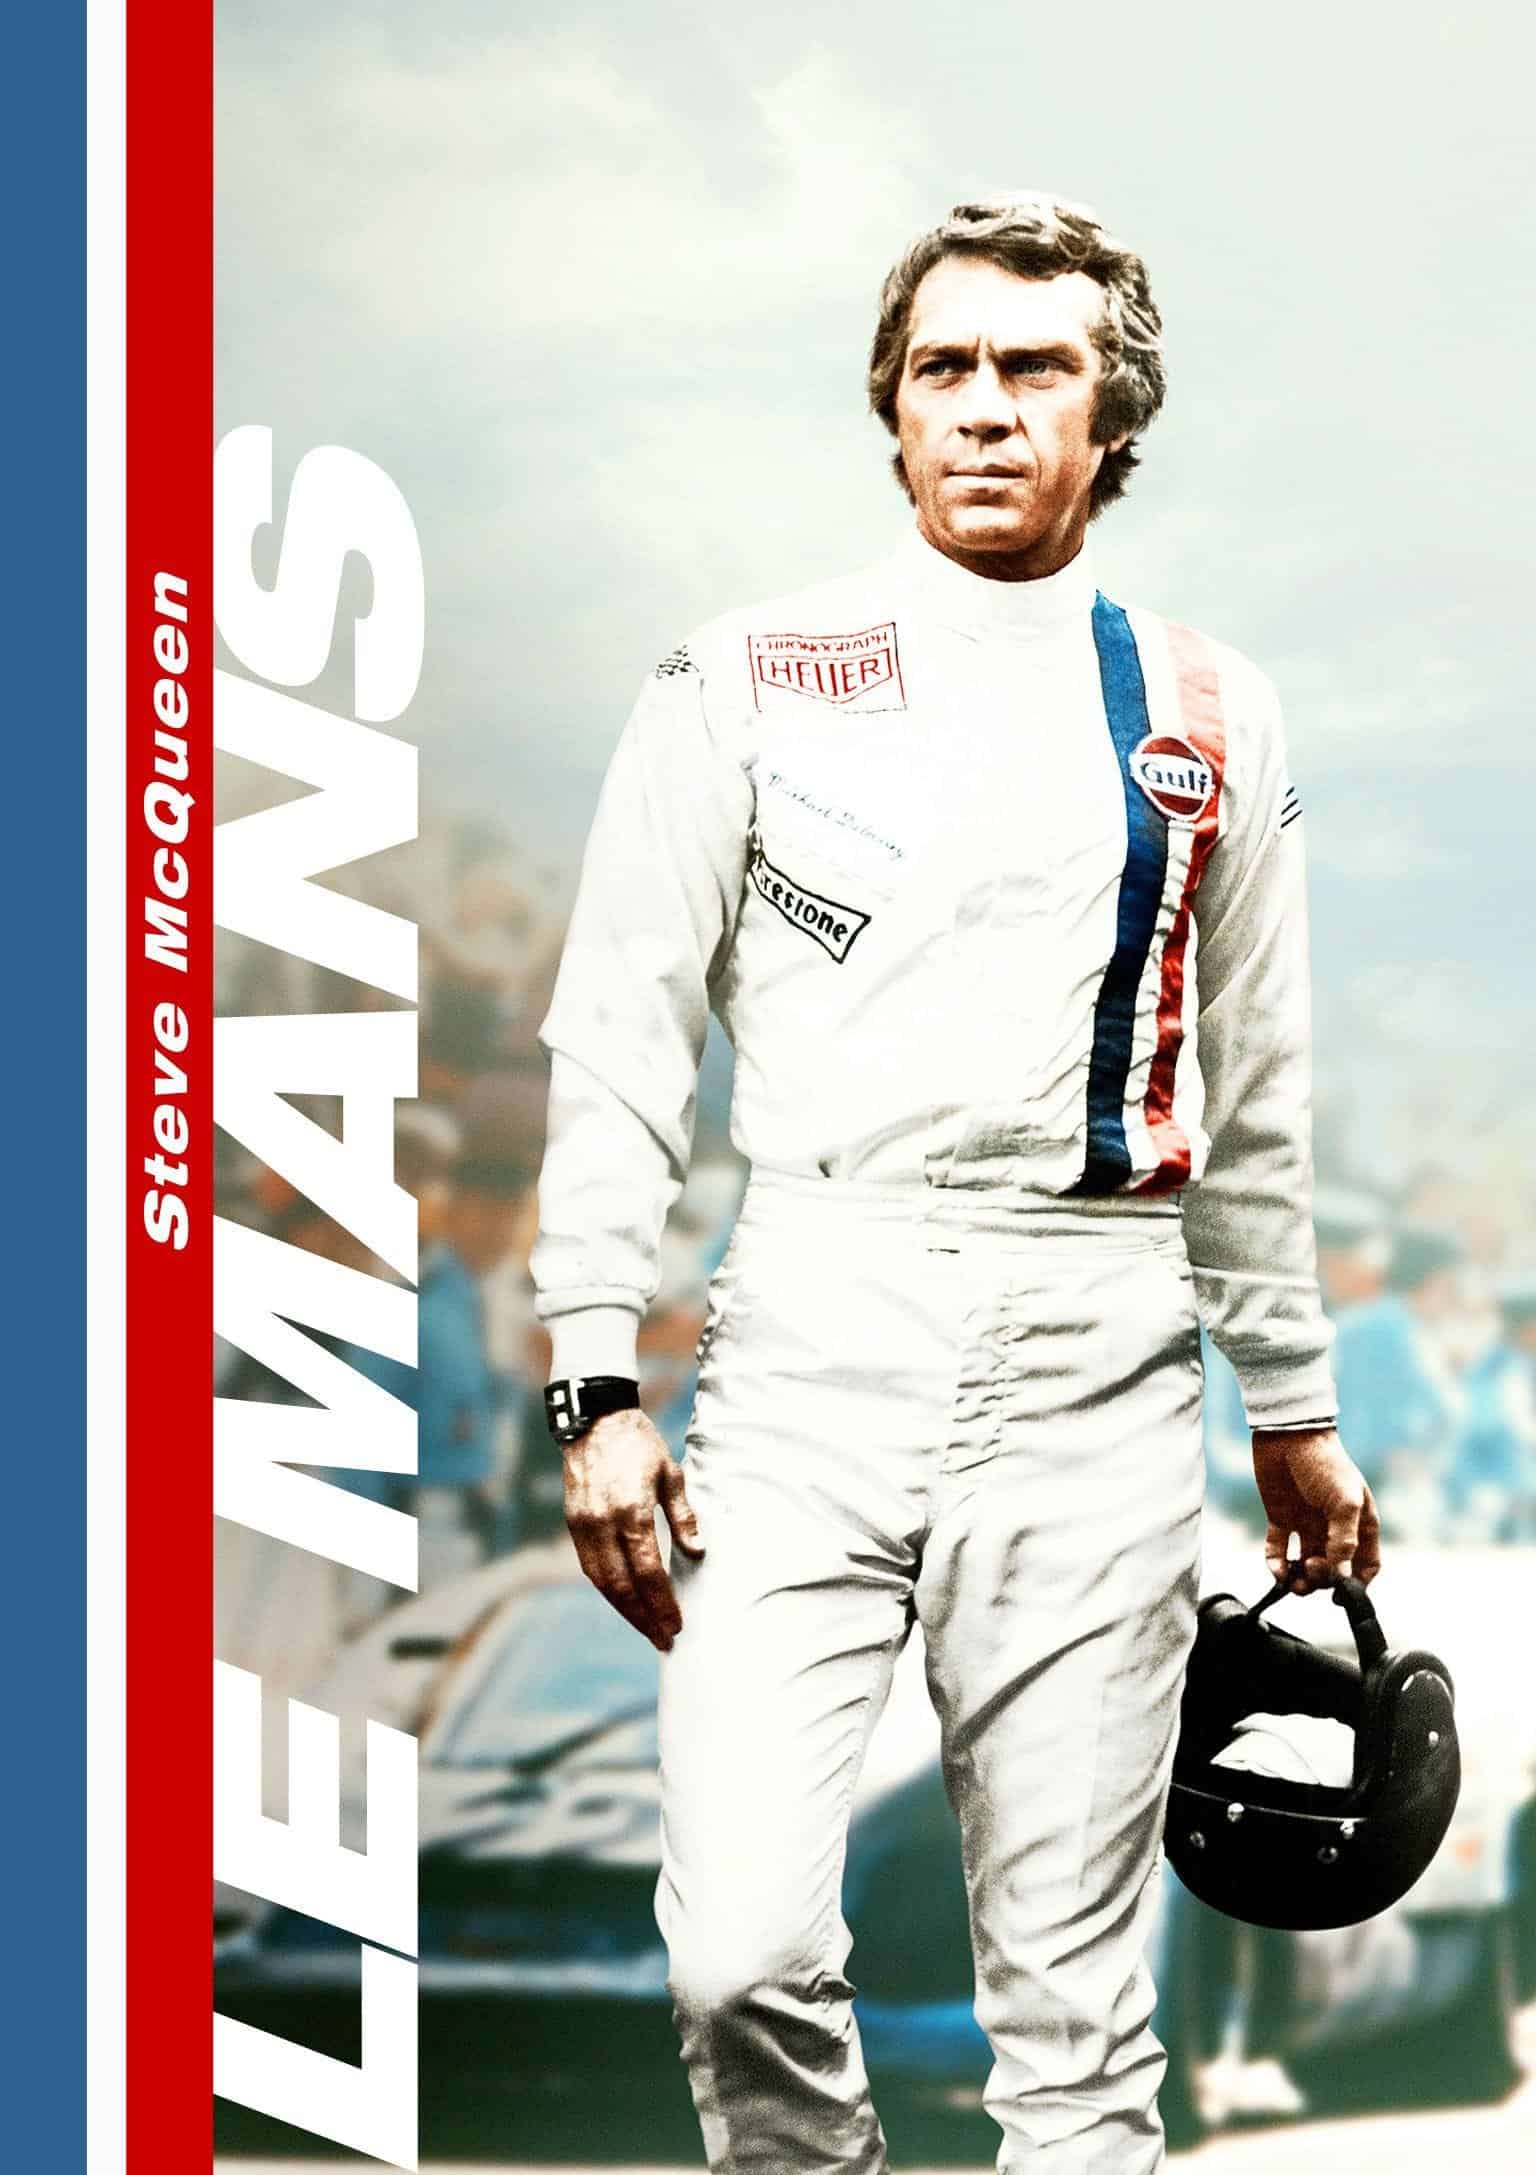 Le Mans, 1971 